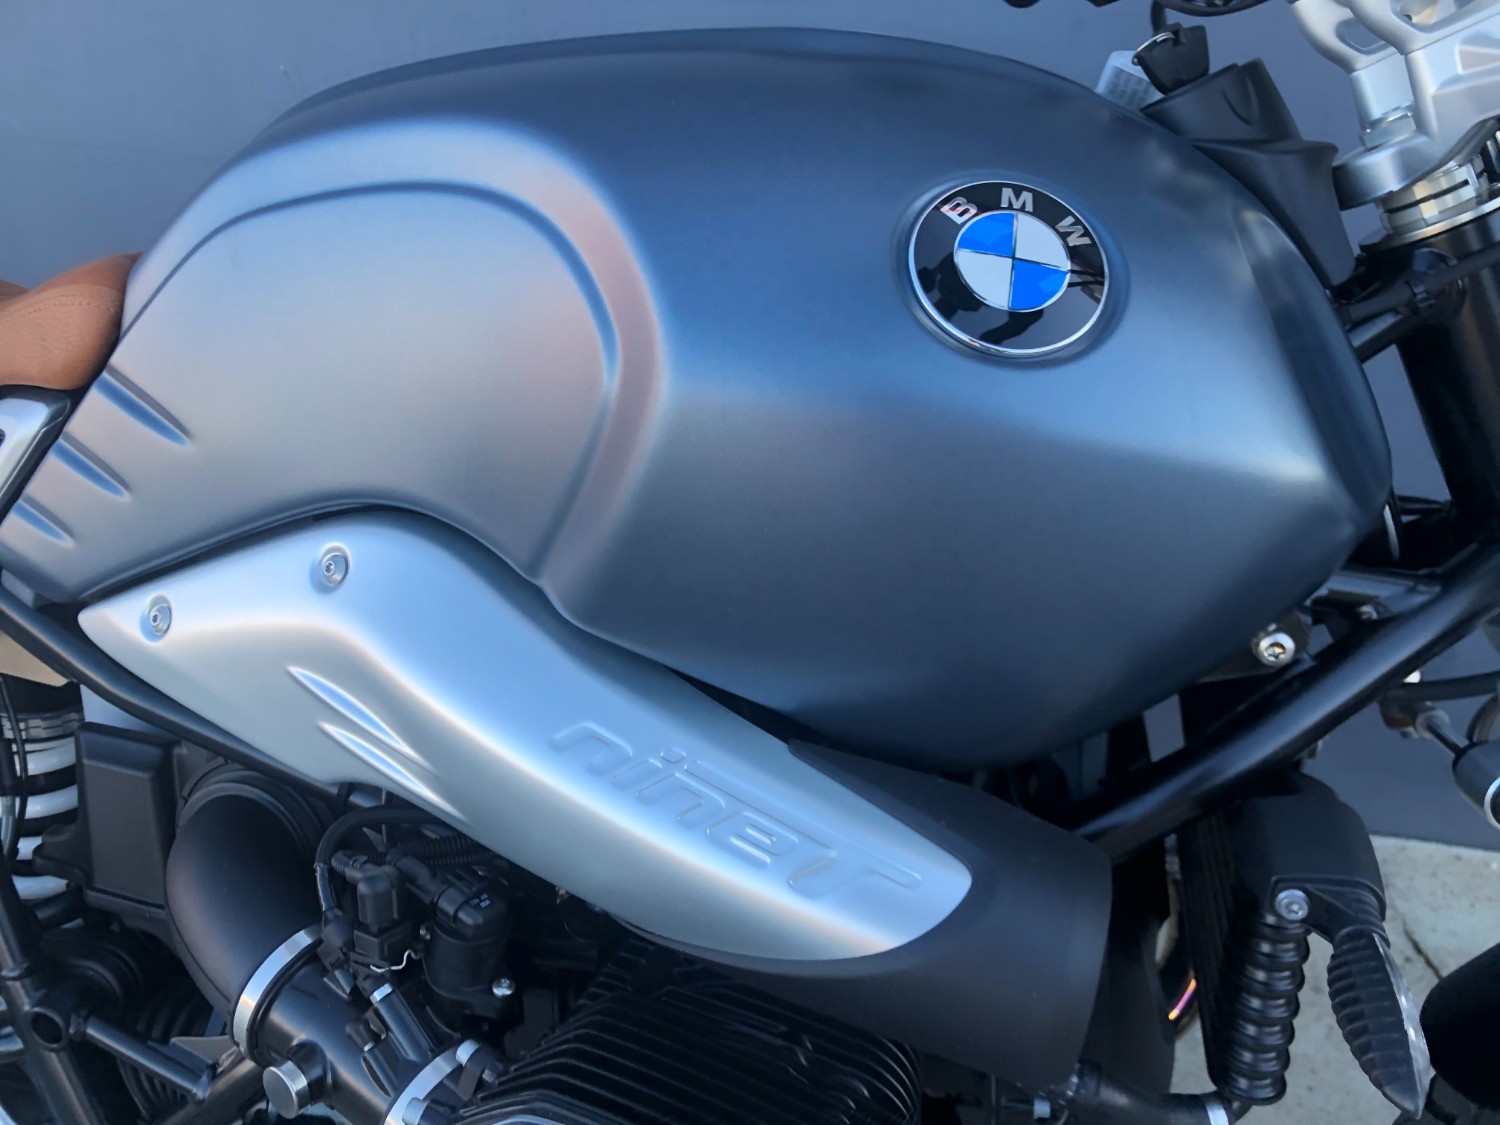 2019 BMW R NINE T SCRAMBLER Motorcycle Image 18